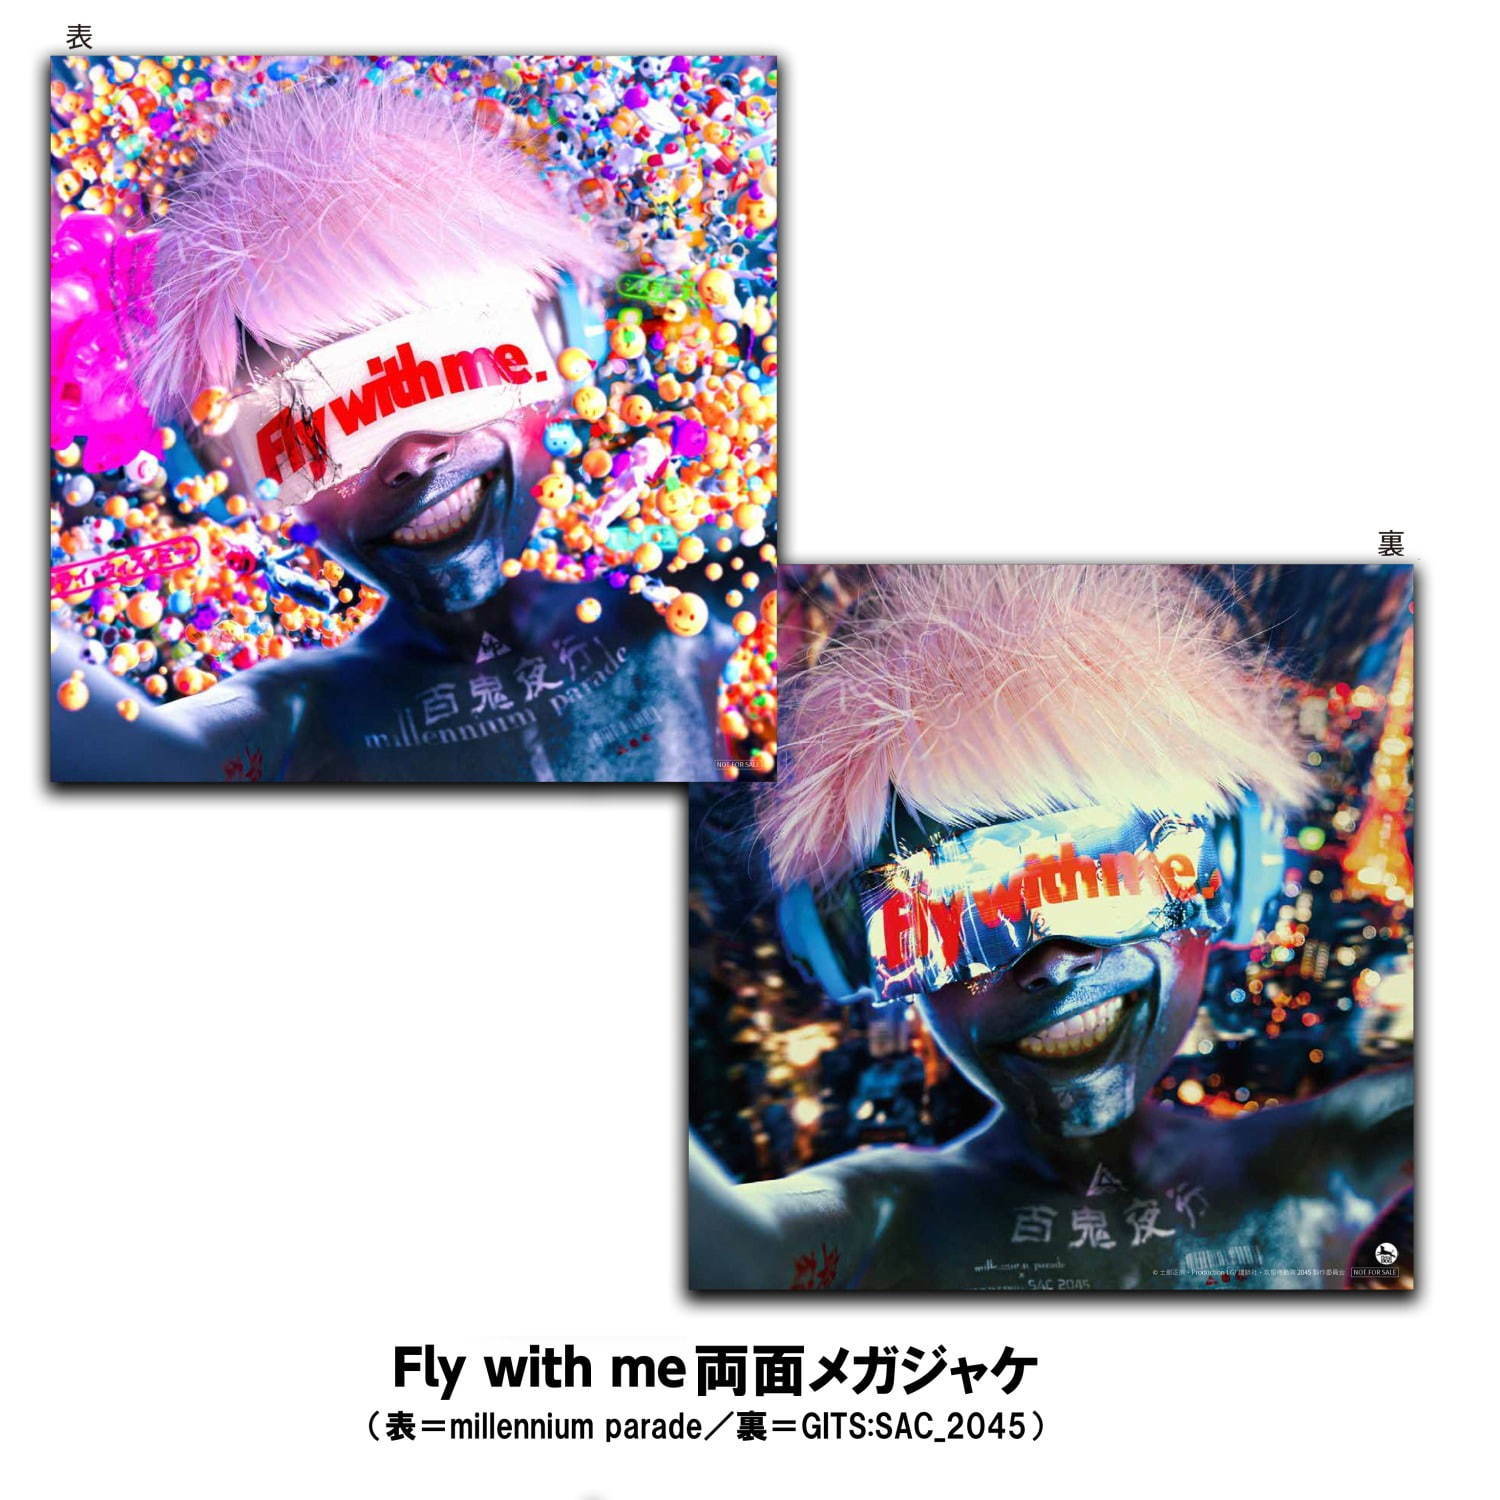 キングヌー常田大希ミレニアム・パレードの新曲「Fly with me」、『攻 